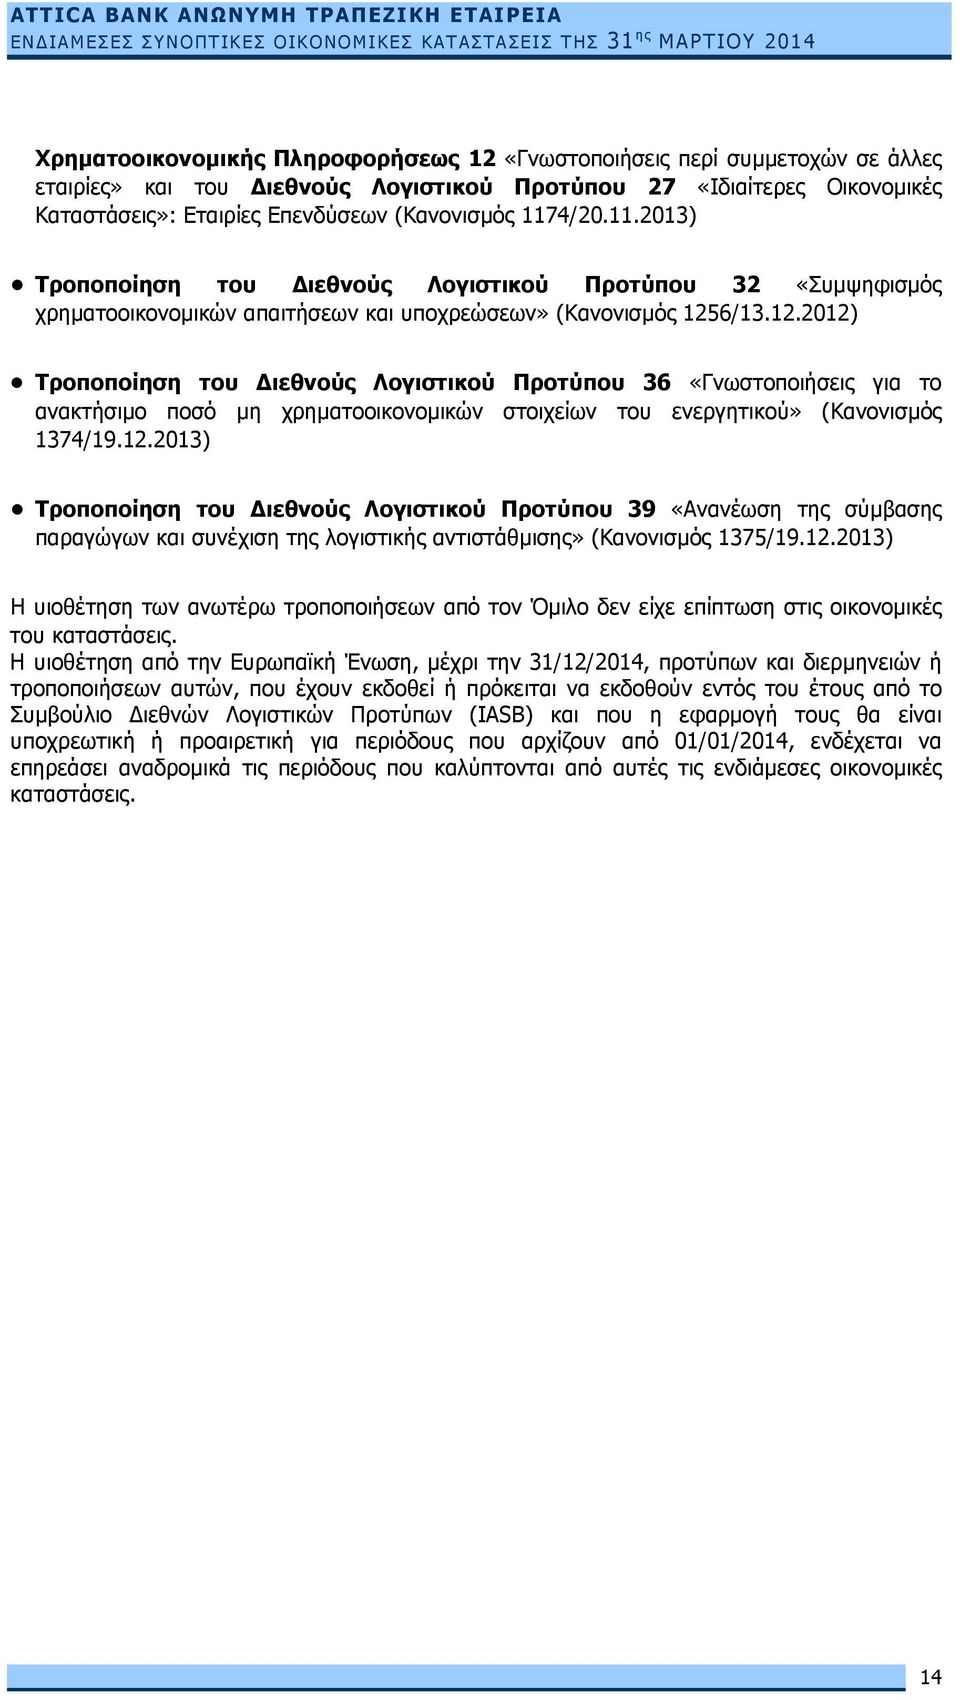 6/13.12.2012) Τροποποίηση του Διεθνούς Λογιστικού Προτύπου 36 «Γνωστοποιήσεις για το ανακτήσιµο ποσό µη χρηματοοικονομικών στοιχείων του ενεργητικού» (Κανονισµός 1374/19.12.2013) Τροποποίηση του Διεθνούς Λογιστικού Προτύπου 39 «Ανανέωση της σύµβασης παραγώγων και συνέχιση της λογιστικής αντιστάθµισης» (Κανονισµός 1375/19.